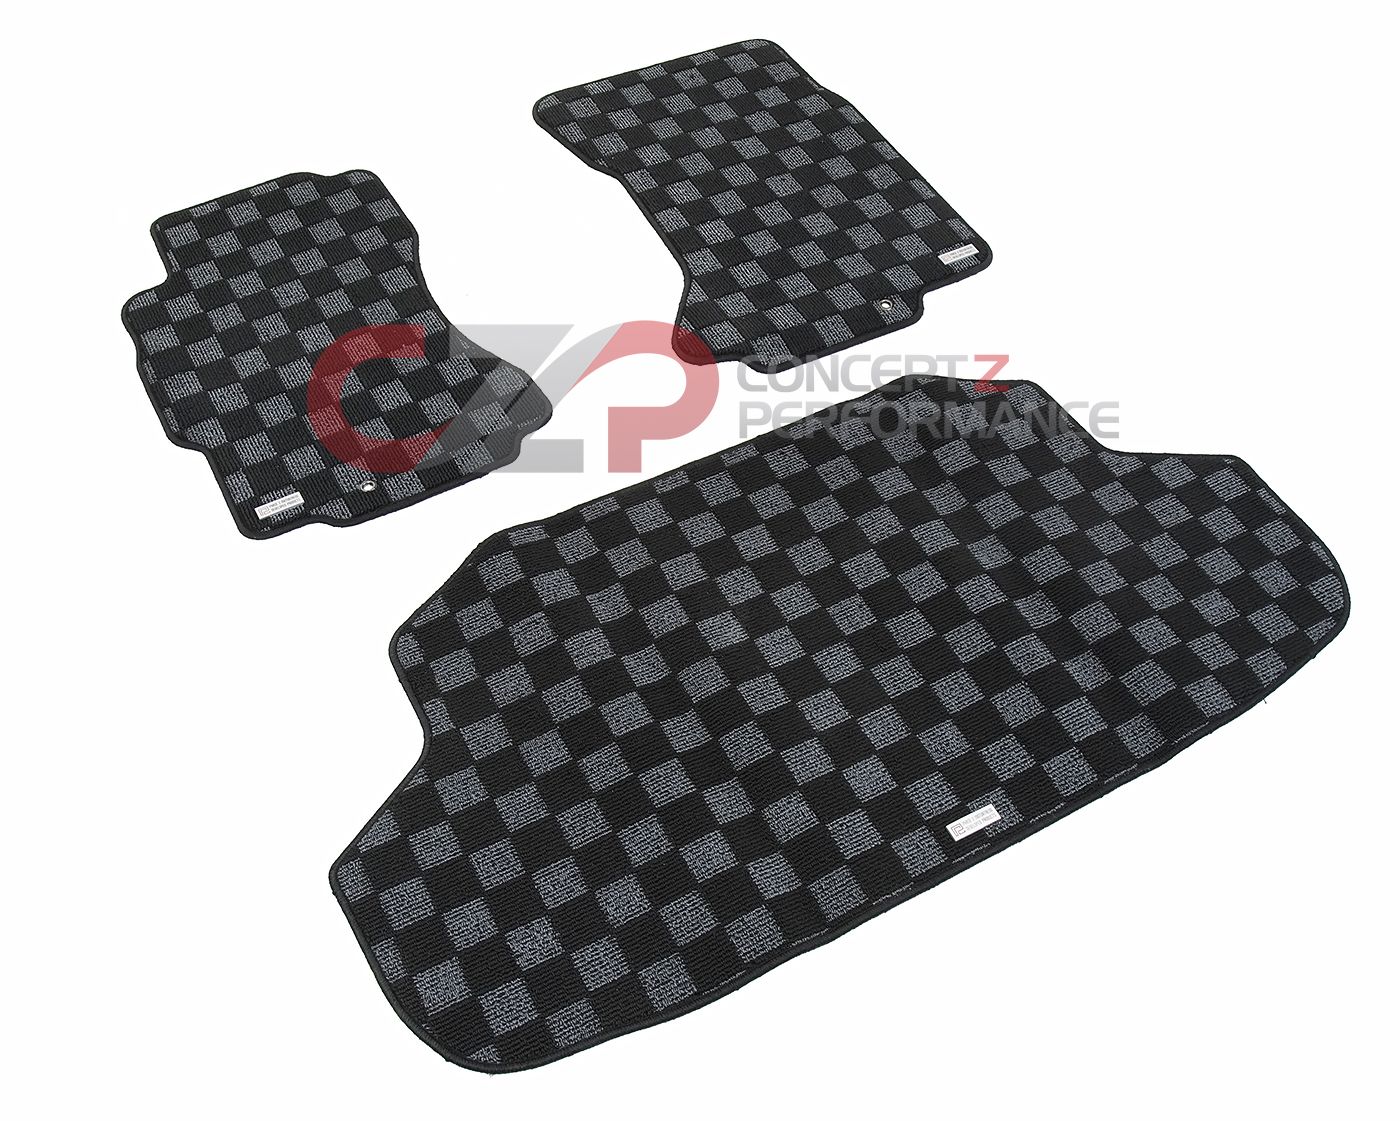 P2M Checkerboard Carpet Set, Black & Dark Gray Front Floor Mats + Trunk Mat - Nissan 300ZX Z32